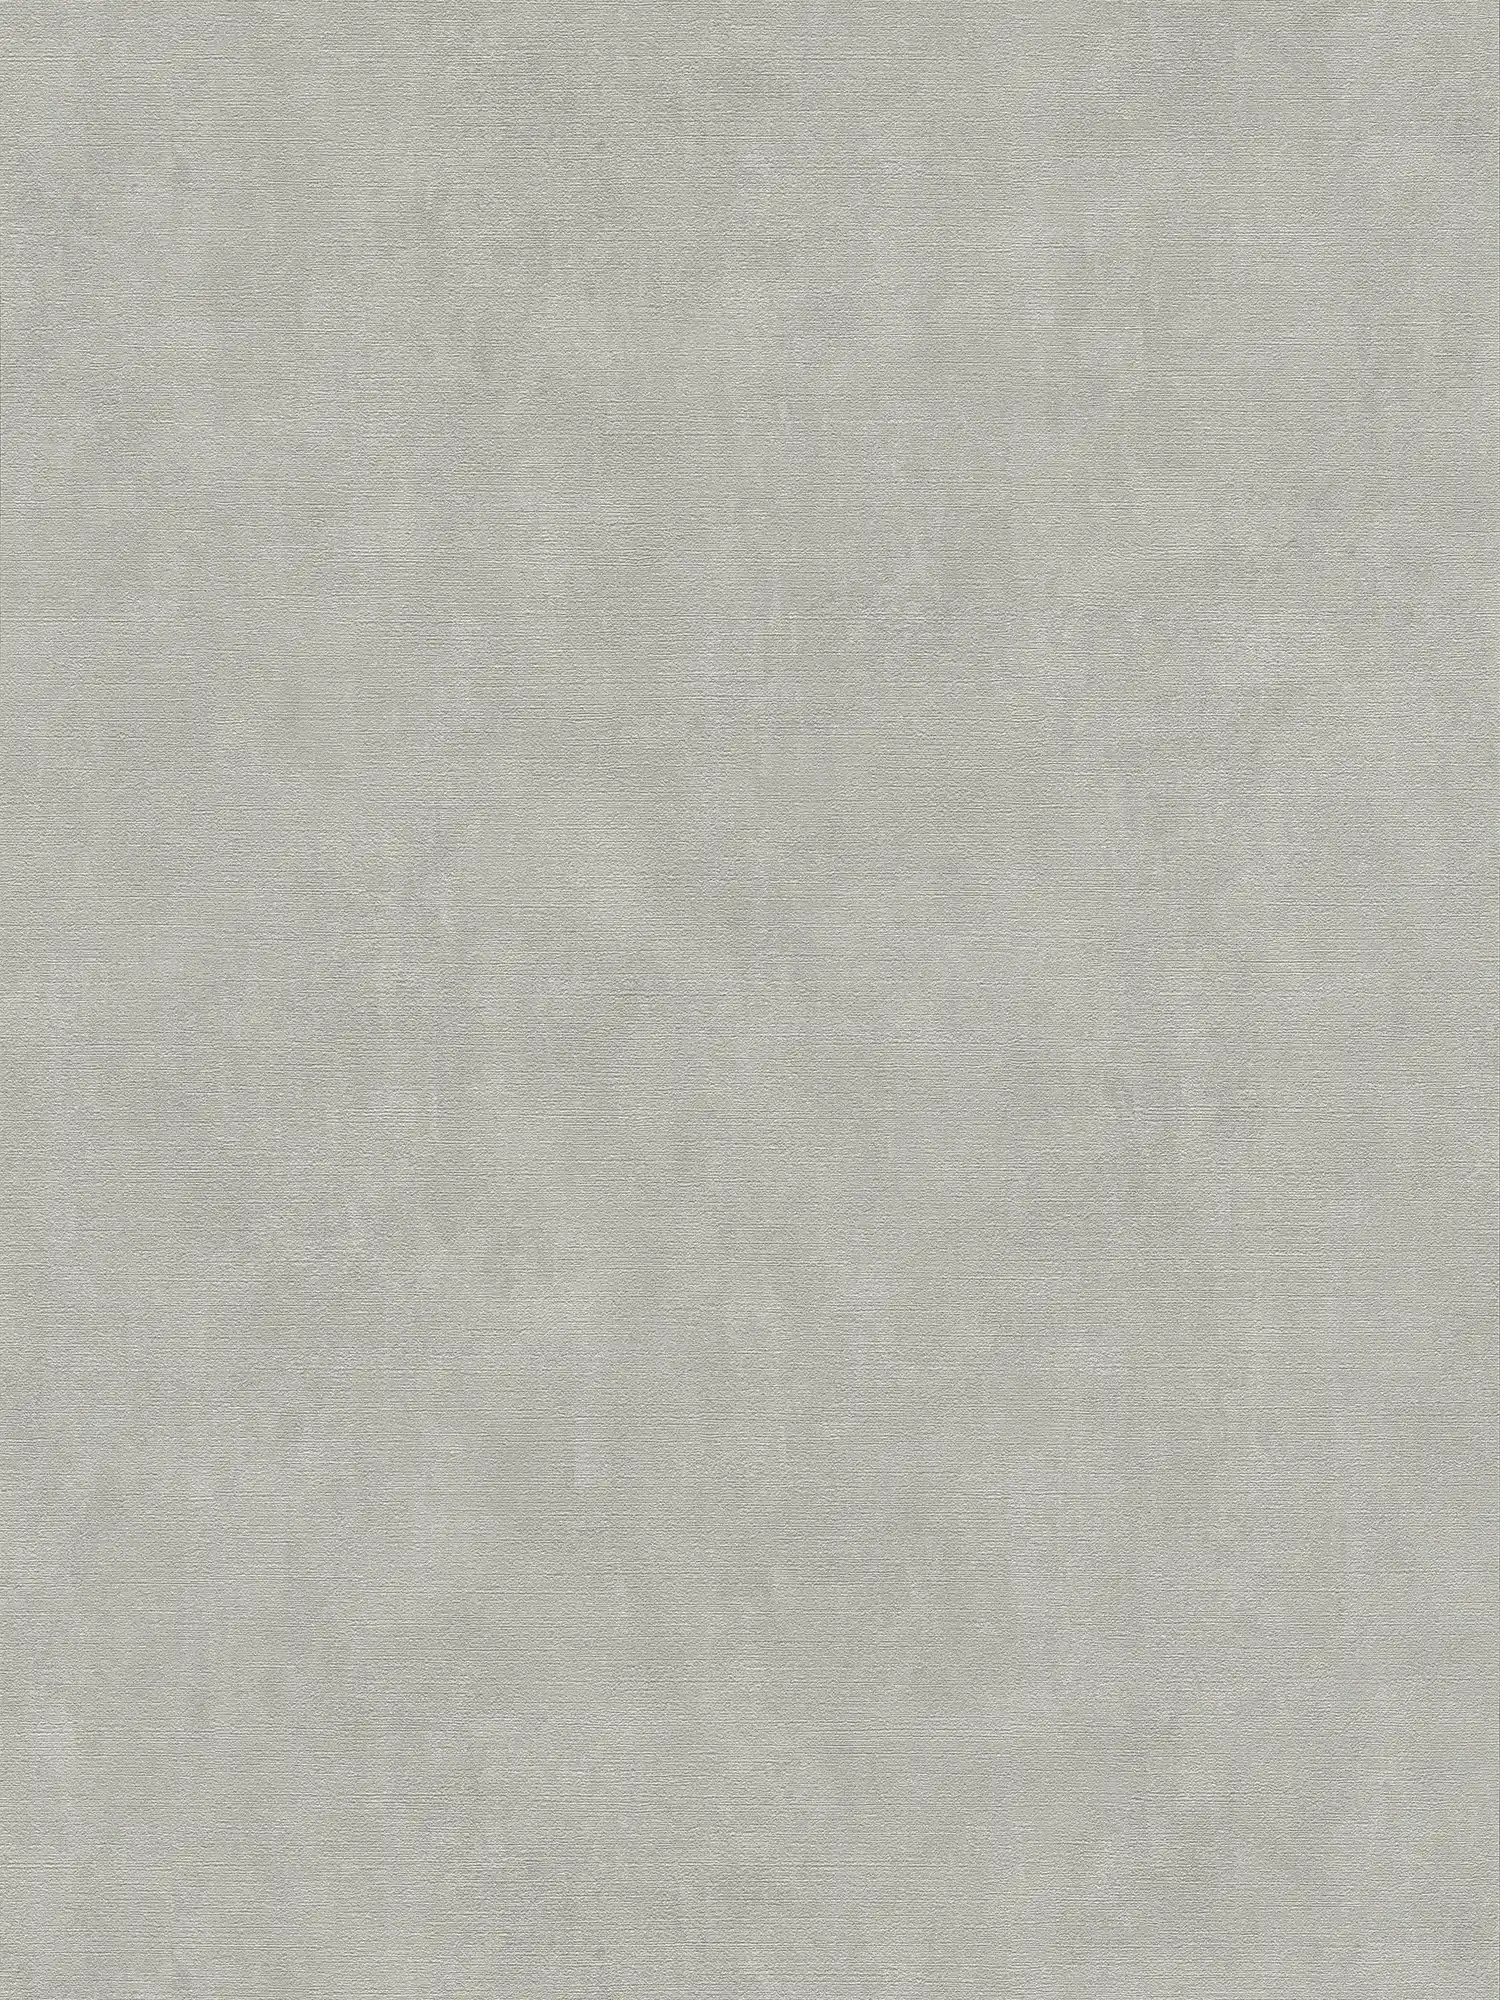 Carta da parati grigio-beige con effetto intonaco in stile vintage
